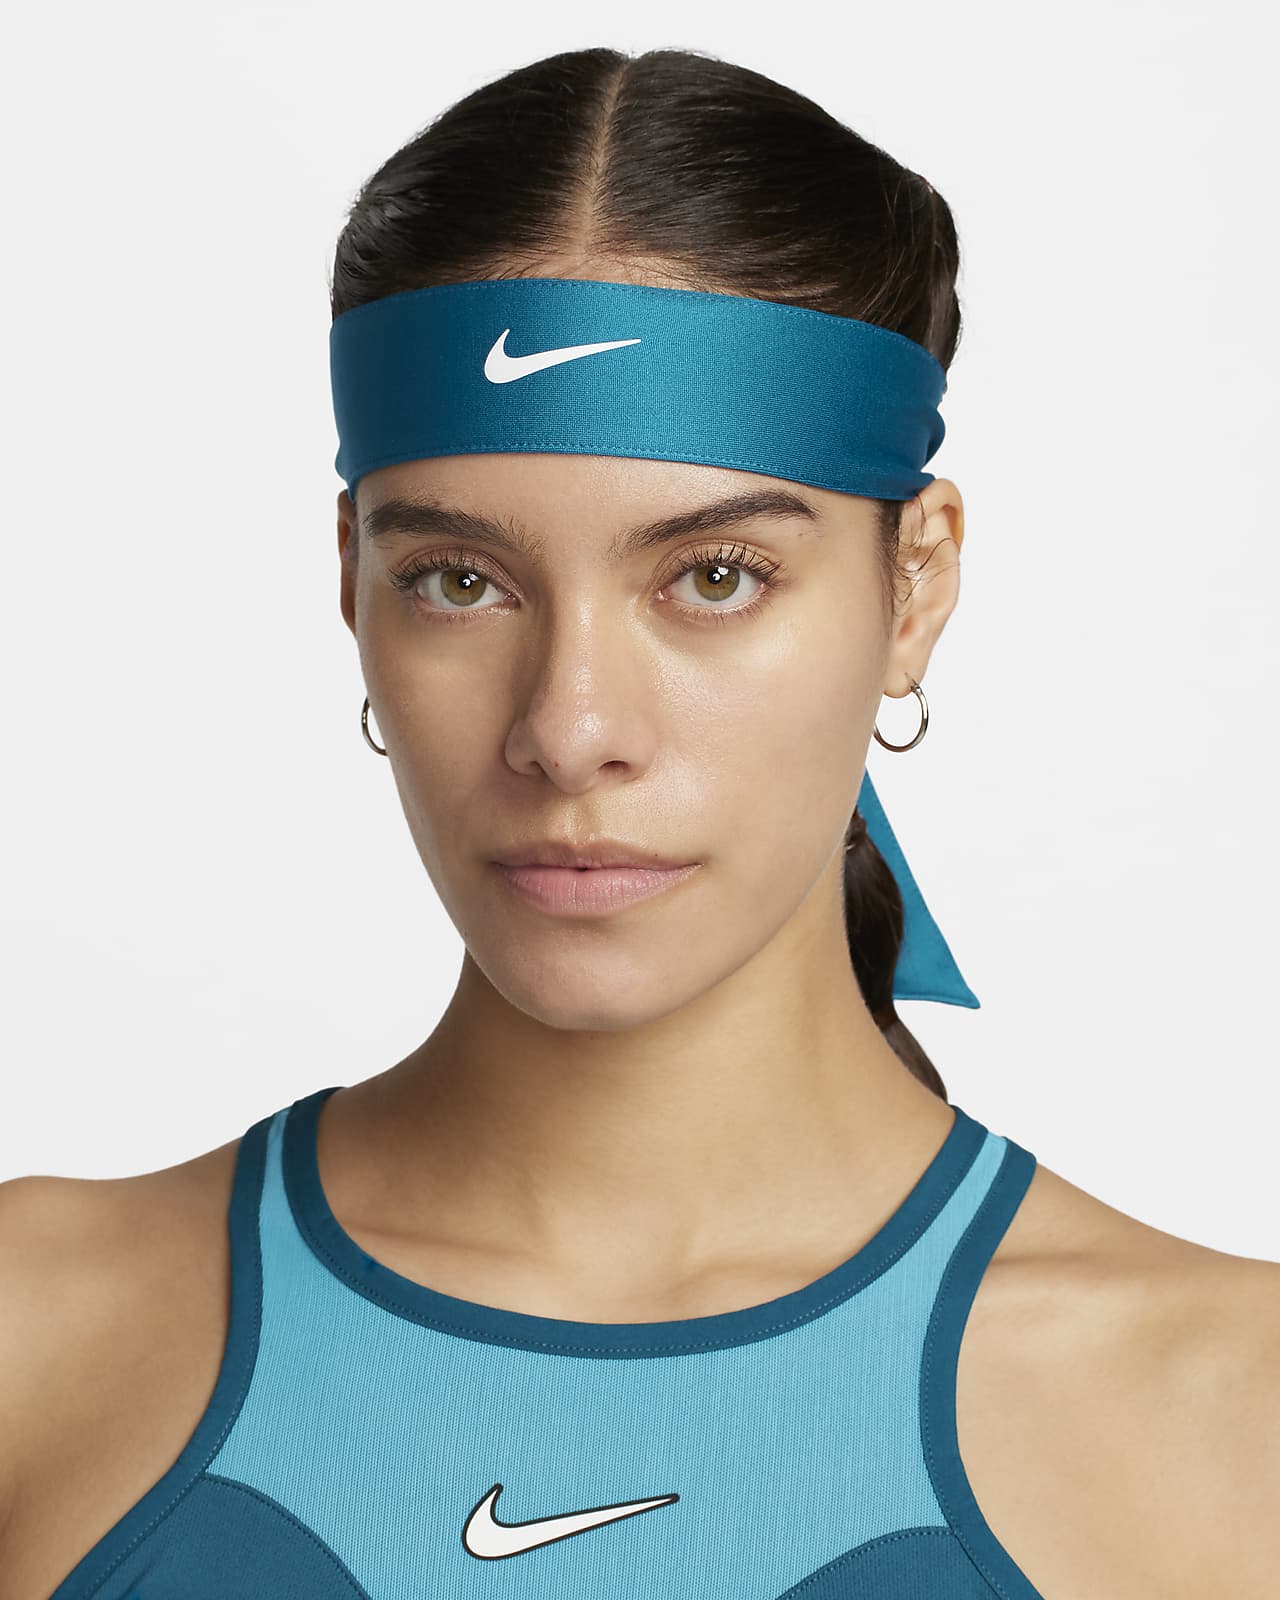 Tennispannband NikeCourt för kvinnor